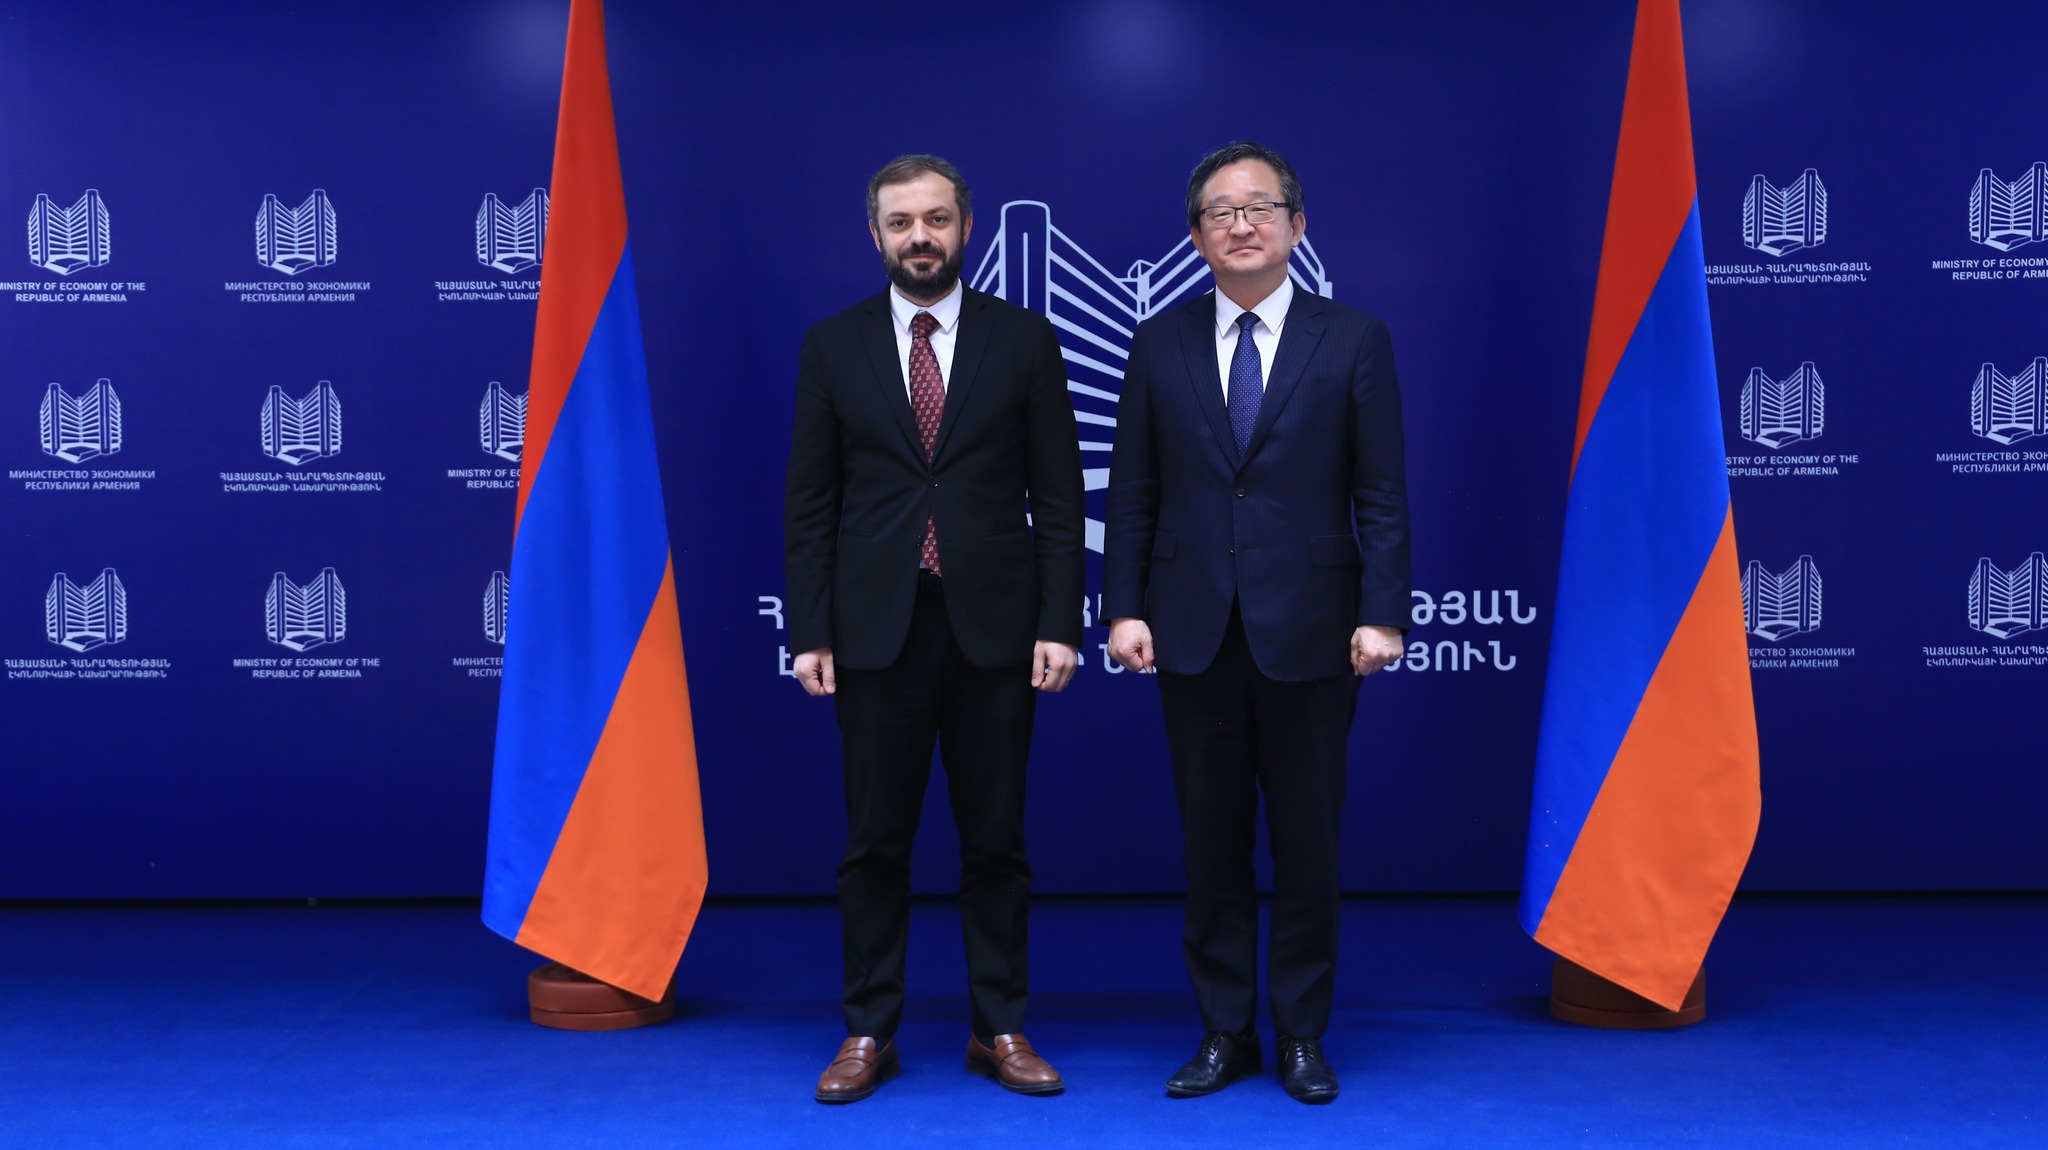 Подчеркнута важность углубления сотрудничества между Арменией и Кореей